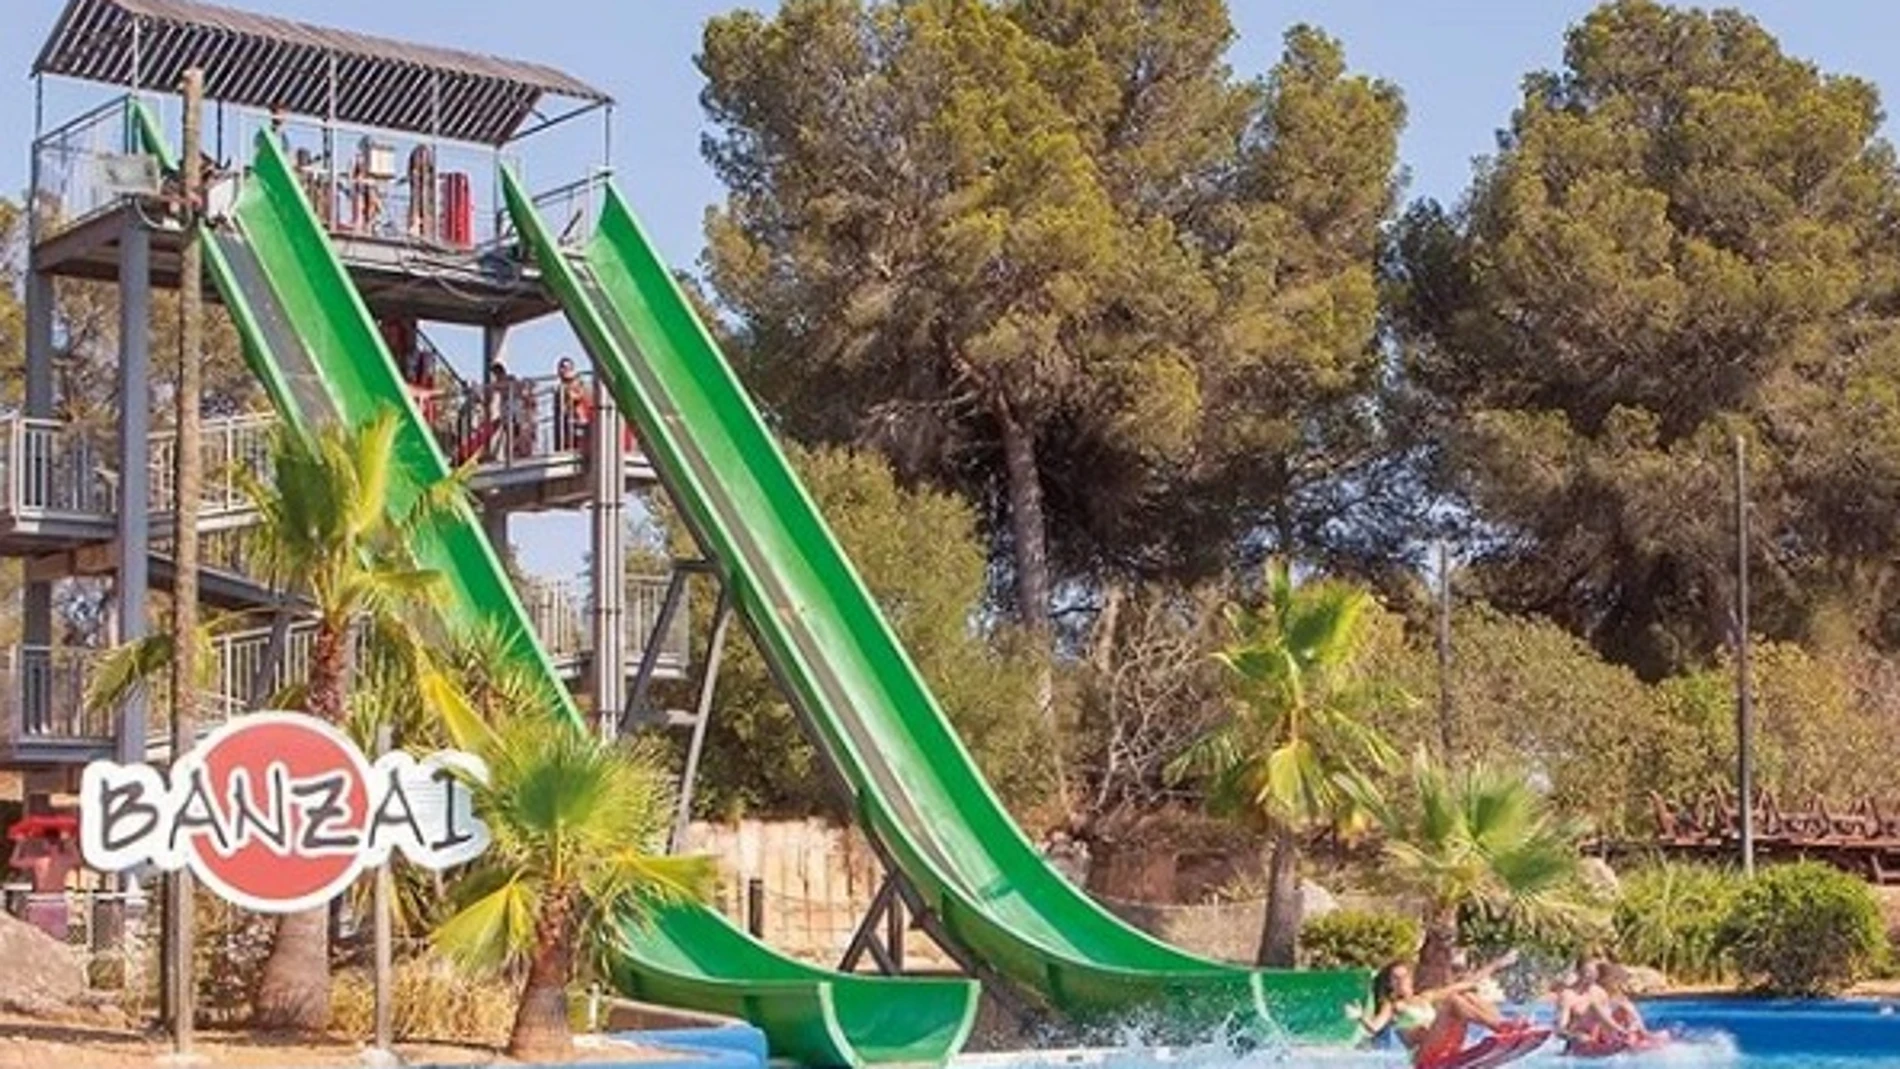 Atracción 'Banzai' del parque acuático Aqualand, en Mallorca.